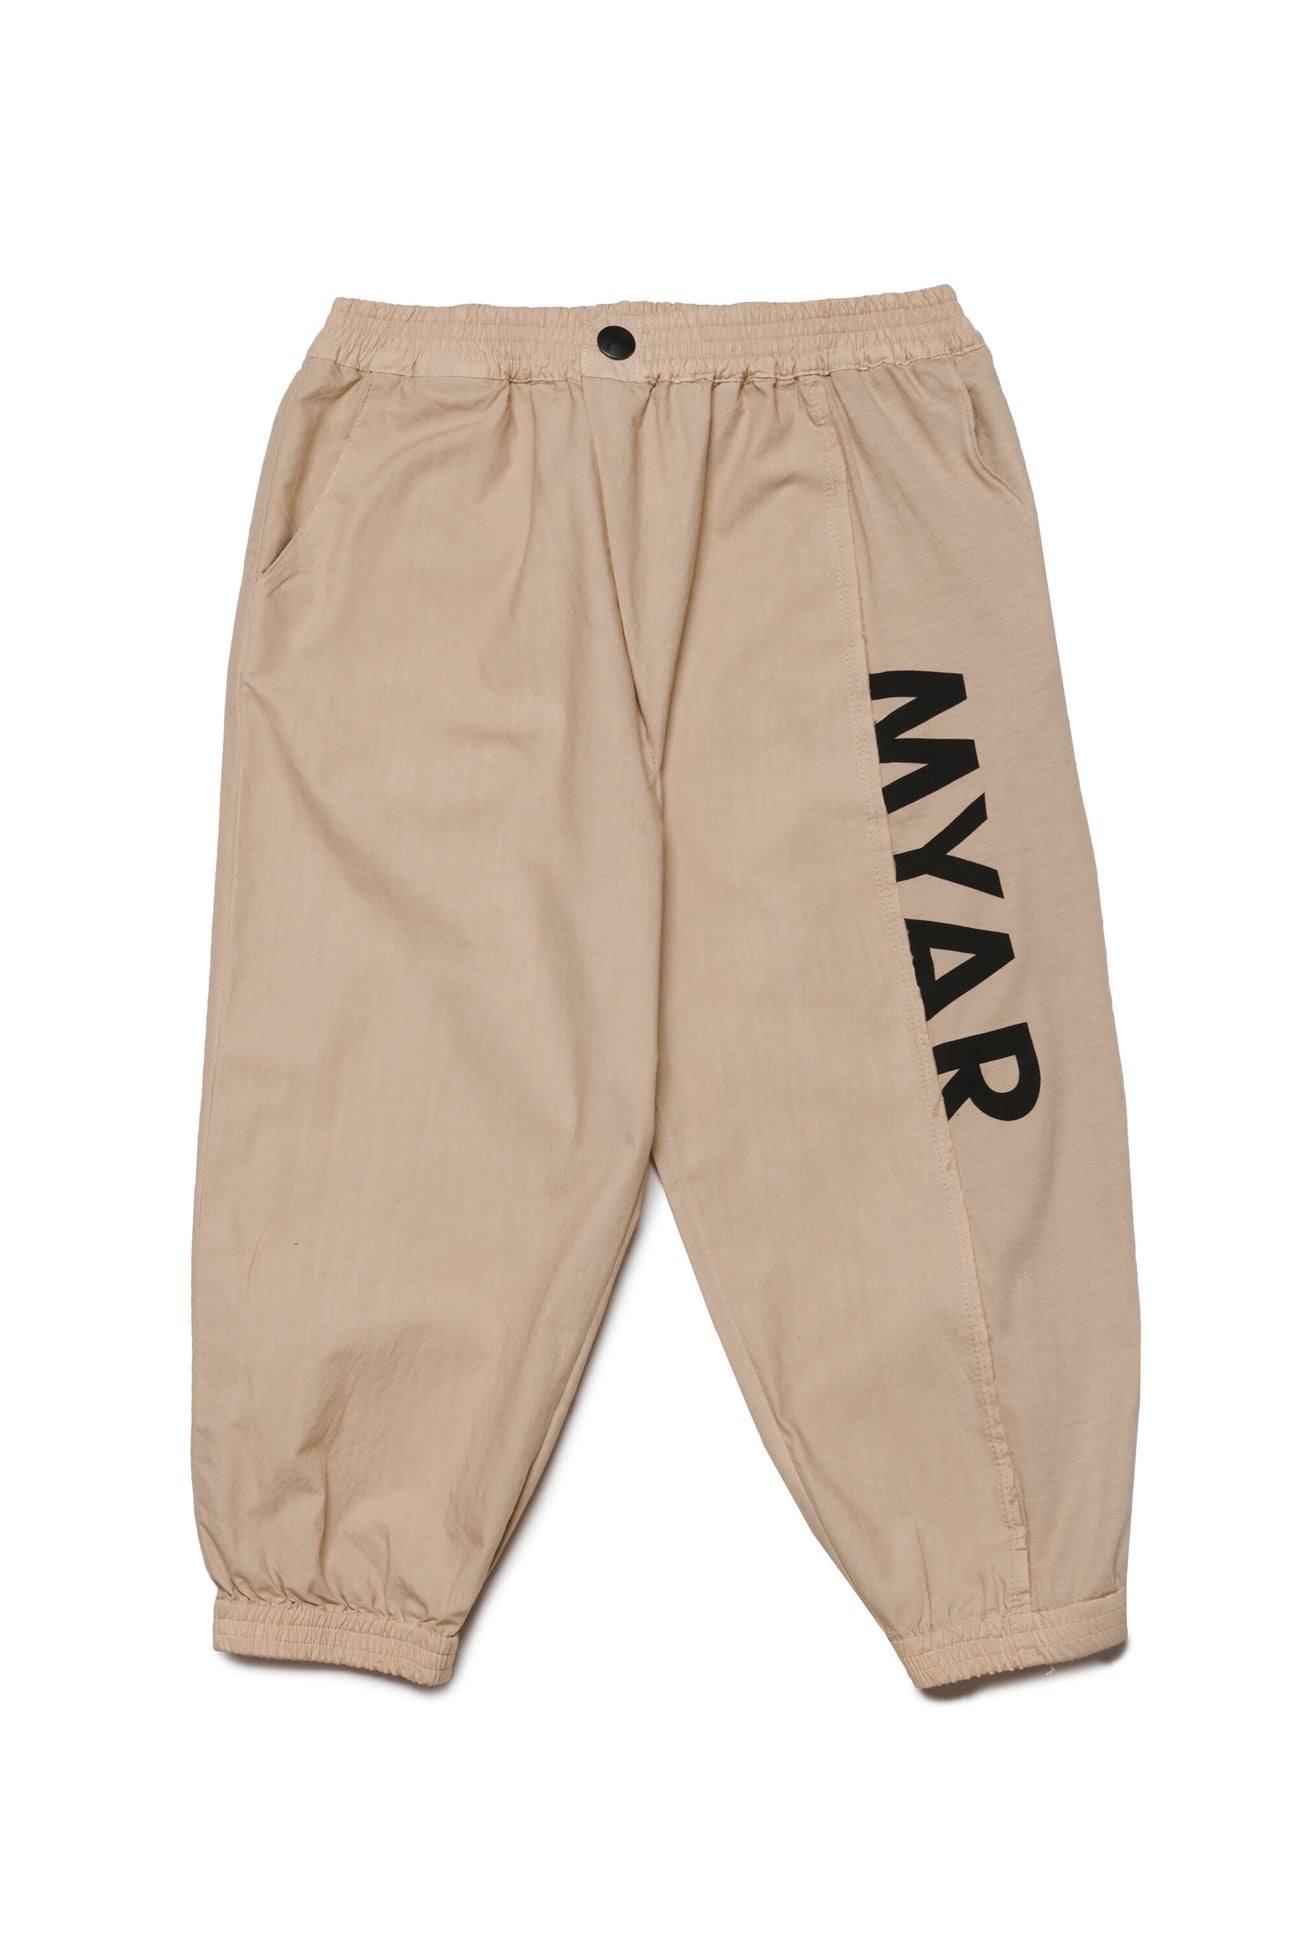 Pantalones en tejido deadstock con logotipo MYAR 